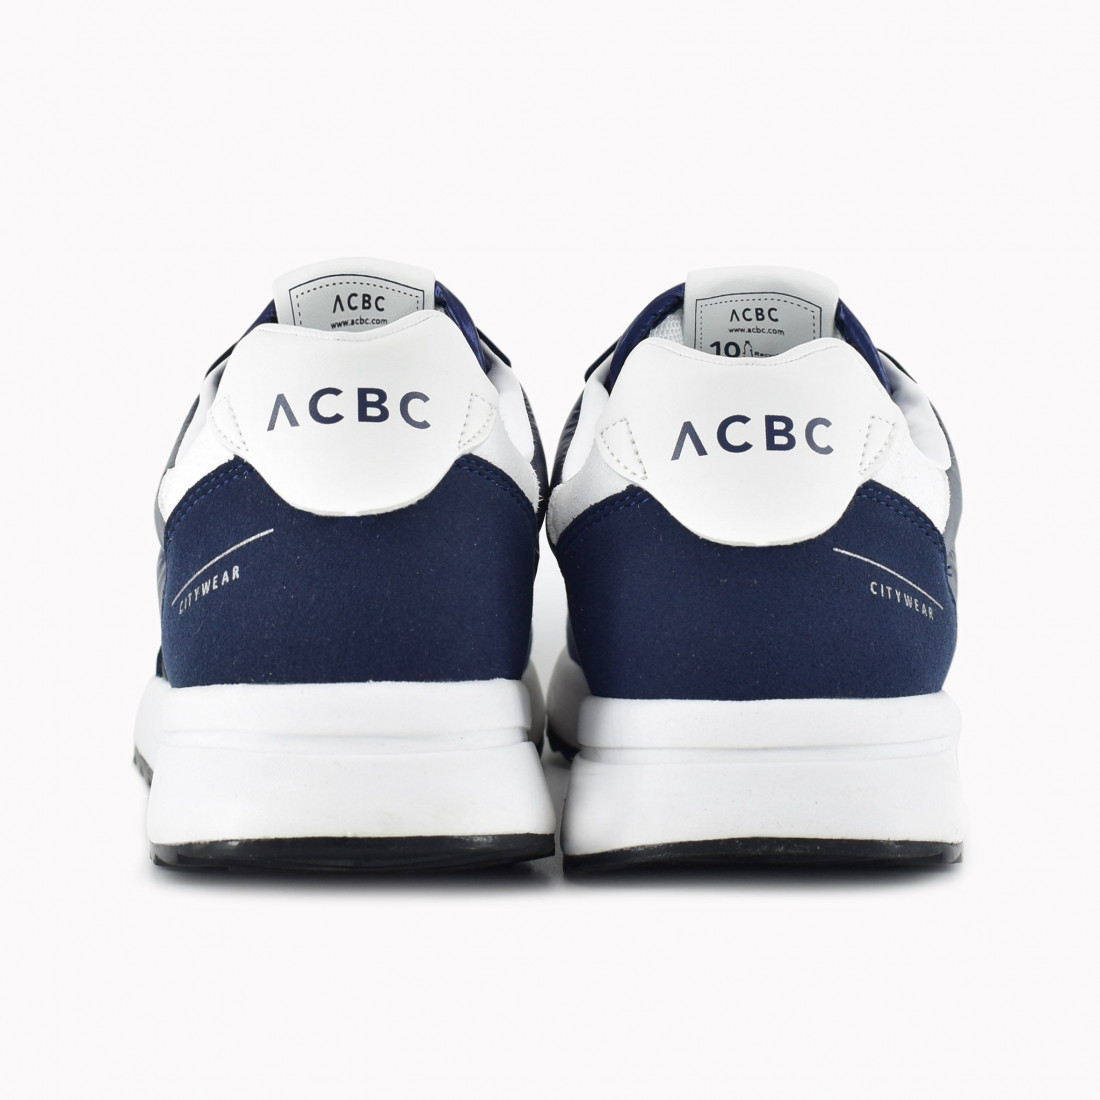 Zapatos de hombre ACBC Ecowear azul fabricados con materiales reciclados